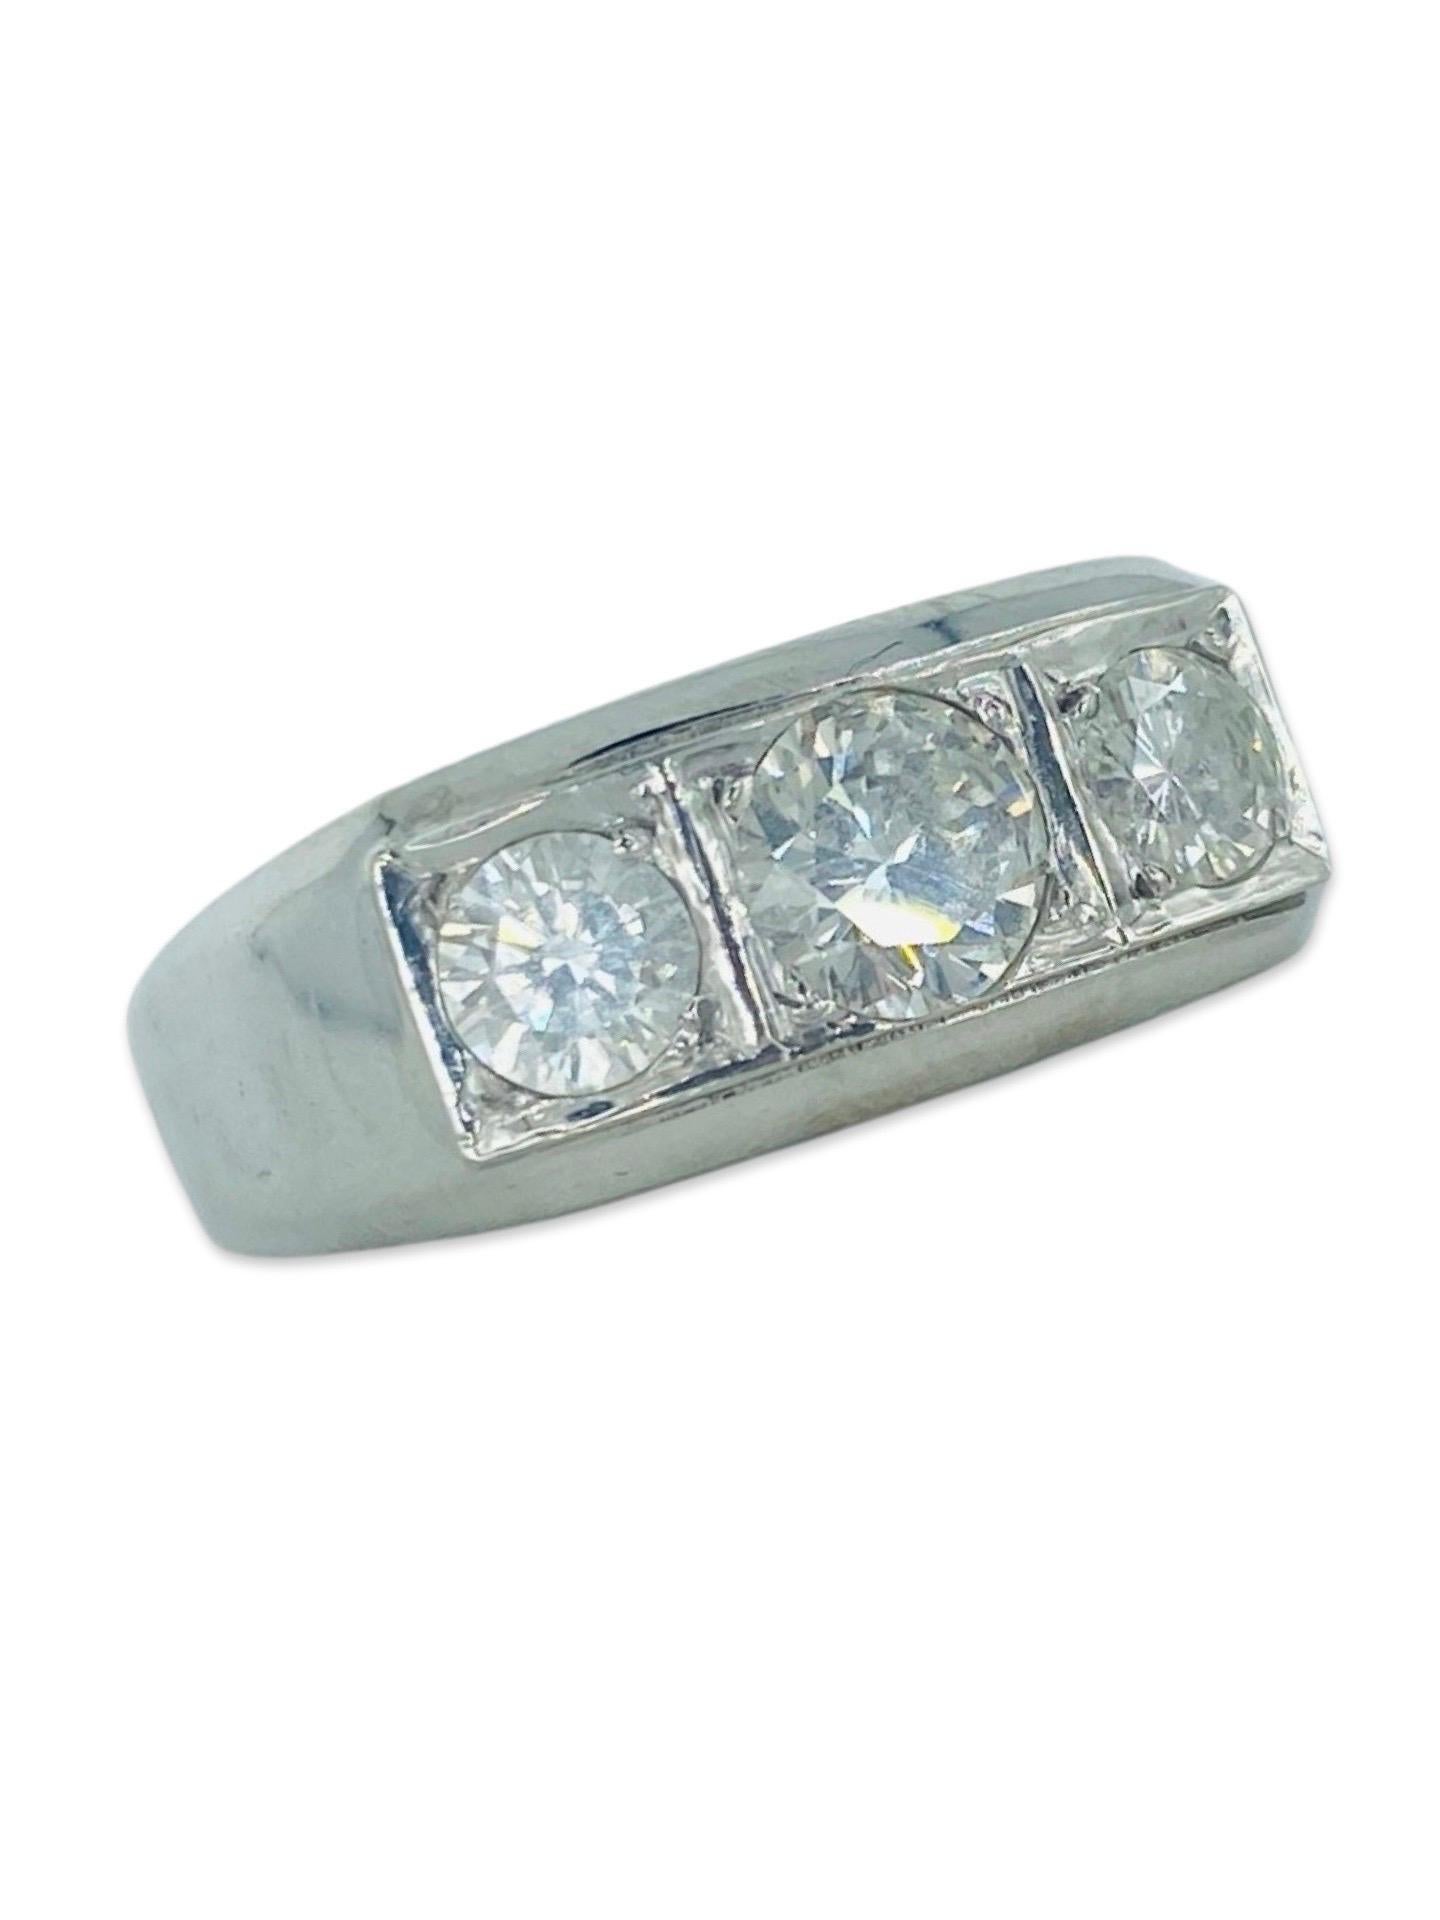 Vintage Men's 3-Stein 1,50 Karat Diamanten Ring. Center Diamant Gewichte ca. 0,80ct von Formel mit Seiten Gewicht ca. 0,35ct jeder passen insgesamt 1,50tcw natürlichen Diamanten H / SI
Der Ring ist eine Größe 9
Gesamtgewicht 6,6 g
14k Weißgold 